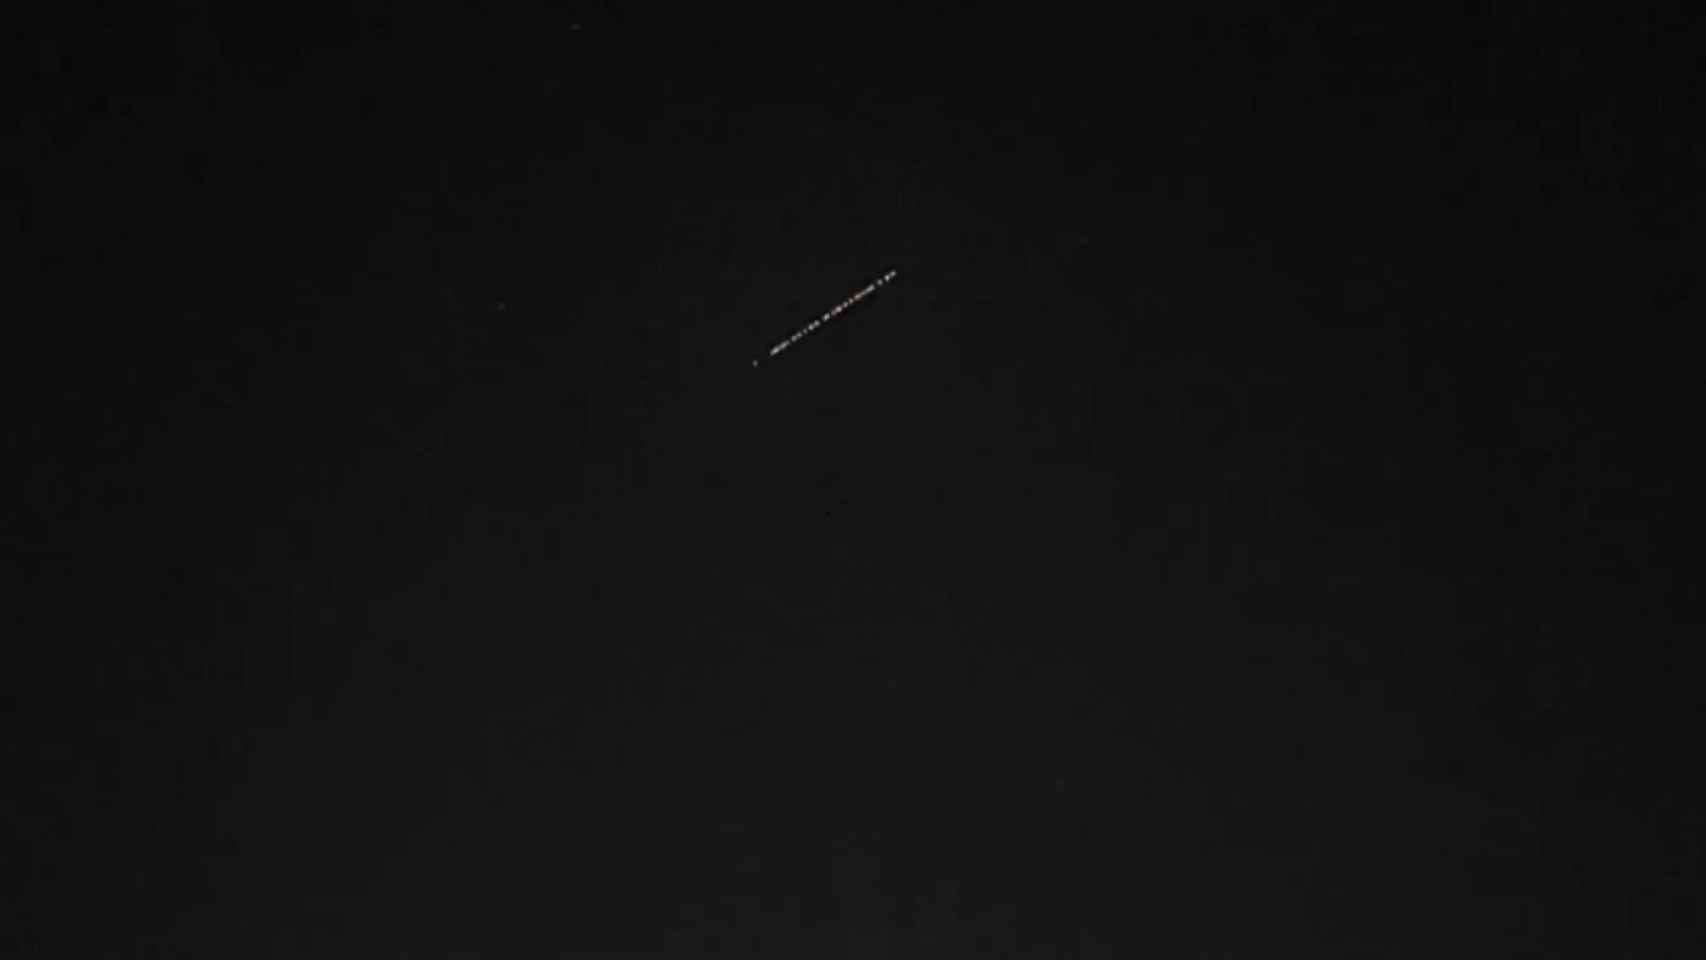 El satélite Starlink visto desde Barcelona el pasado viernes / TWITTER @FRONTERASPACIAL